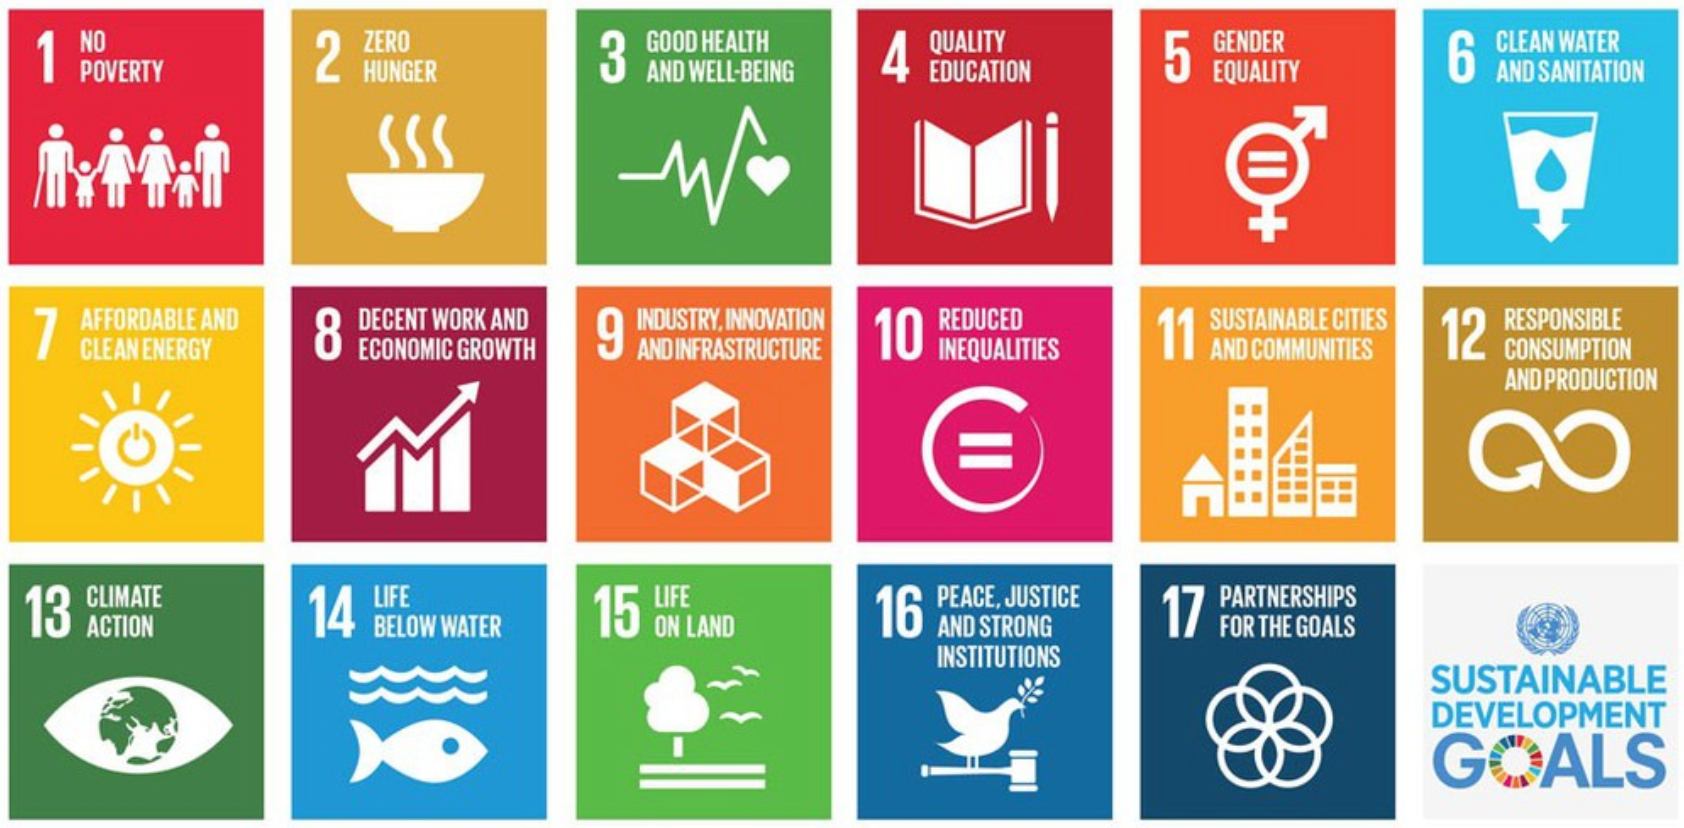 Tiêu chuẩn phục vụ cho các Mục tiêu phát triển bền - Tầm nhìn chung cho một thế giới tốt đẹp hơn - Ảnh 2.